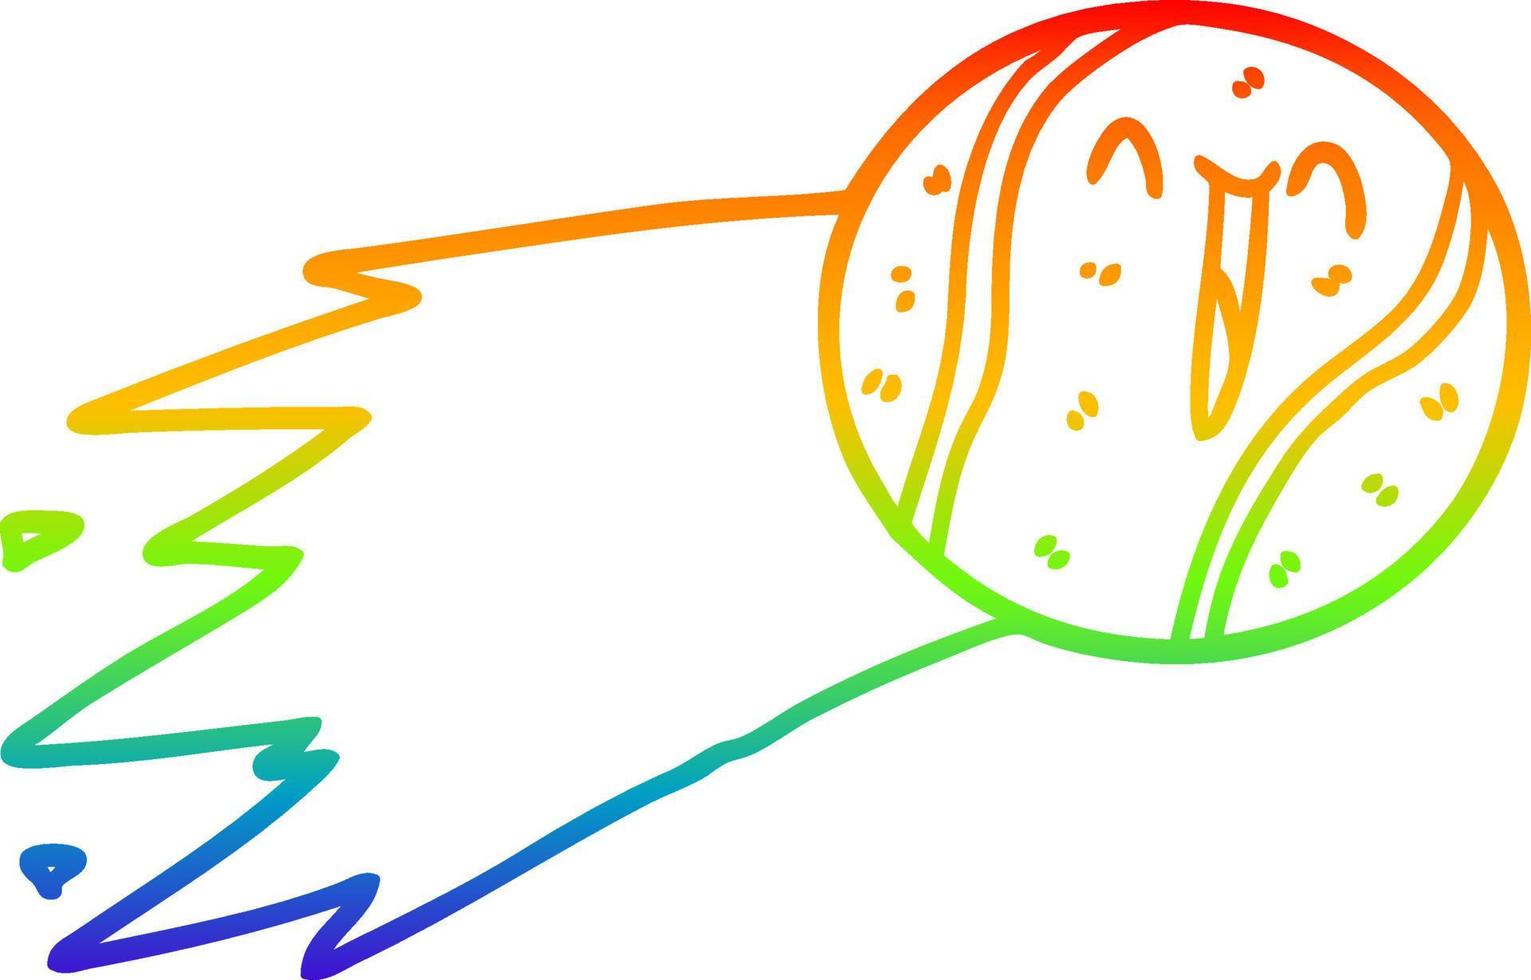 dessin de ligne de gradient arc en ciel dessin animé de balle de tennis volante vecteur